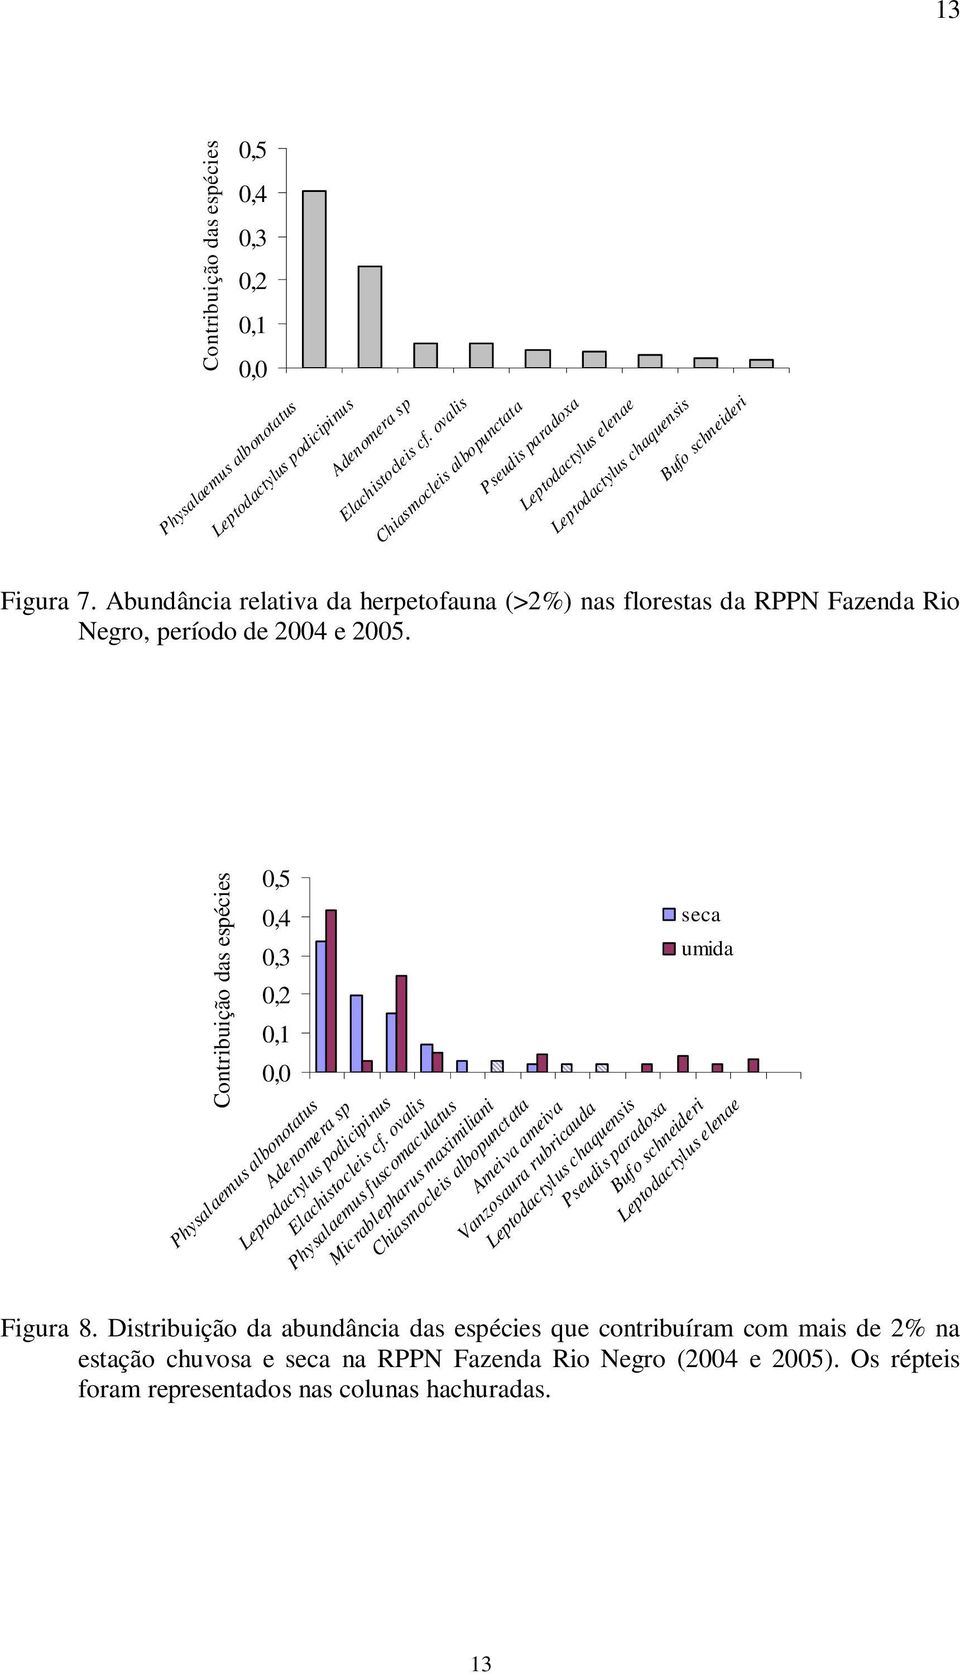 Abundância relativa da herpetofauna (>2%) nas florestas da RPPN Fazenda Rio Negro, período de 2004 e 2005.